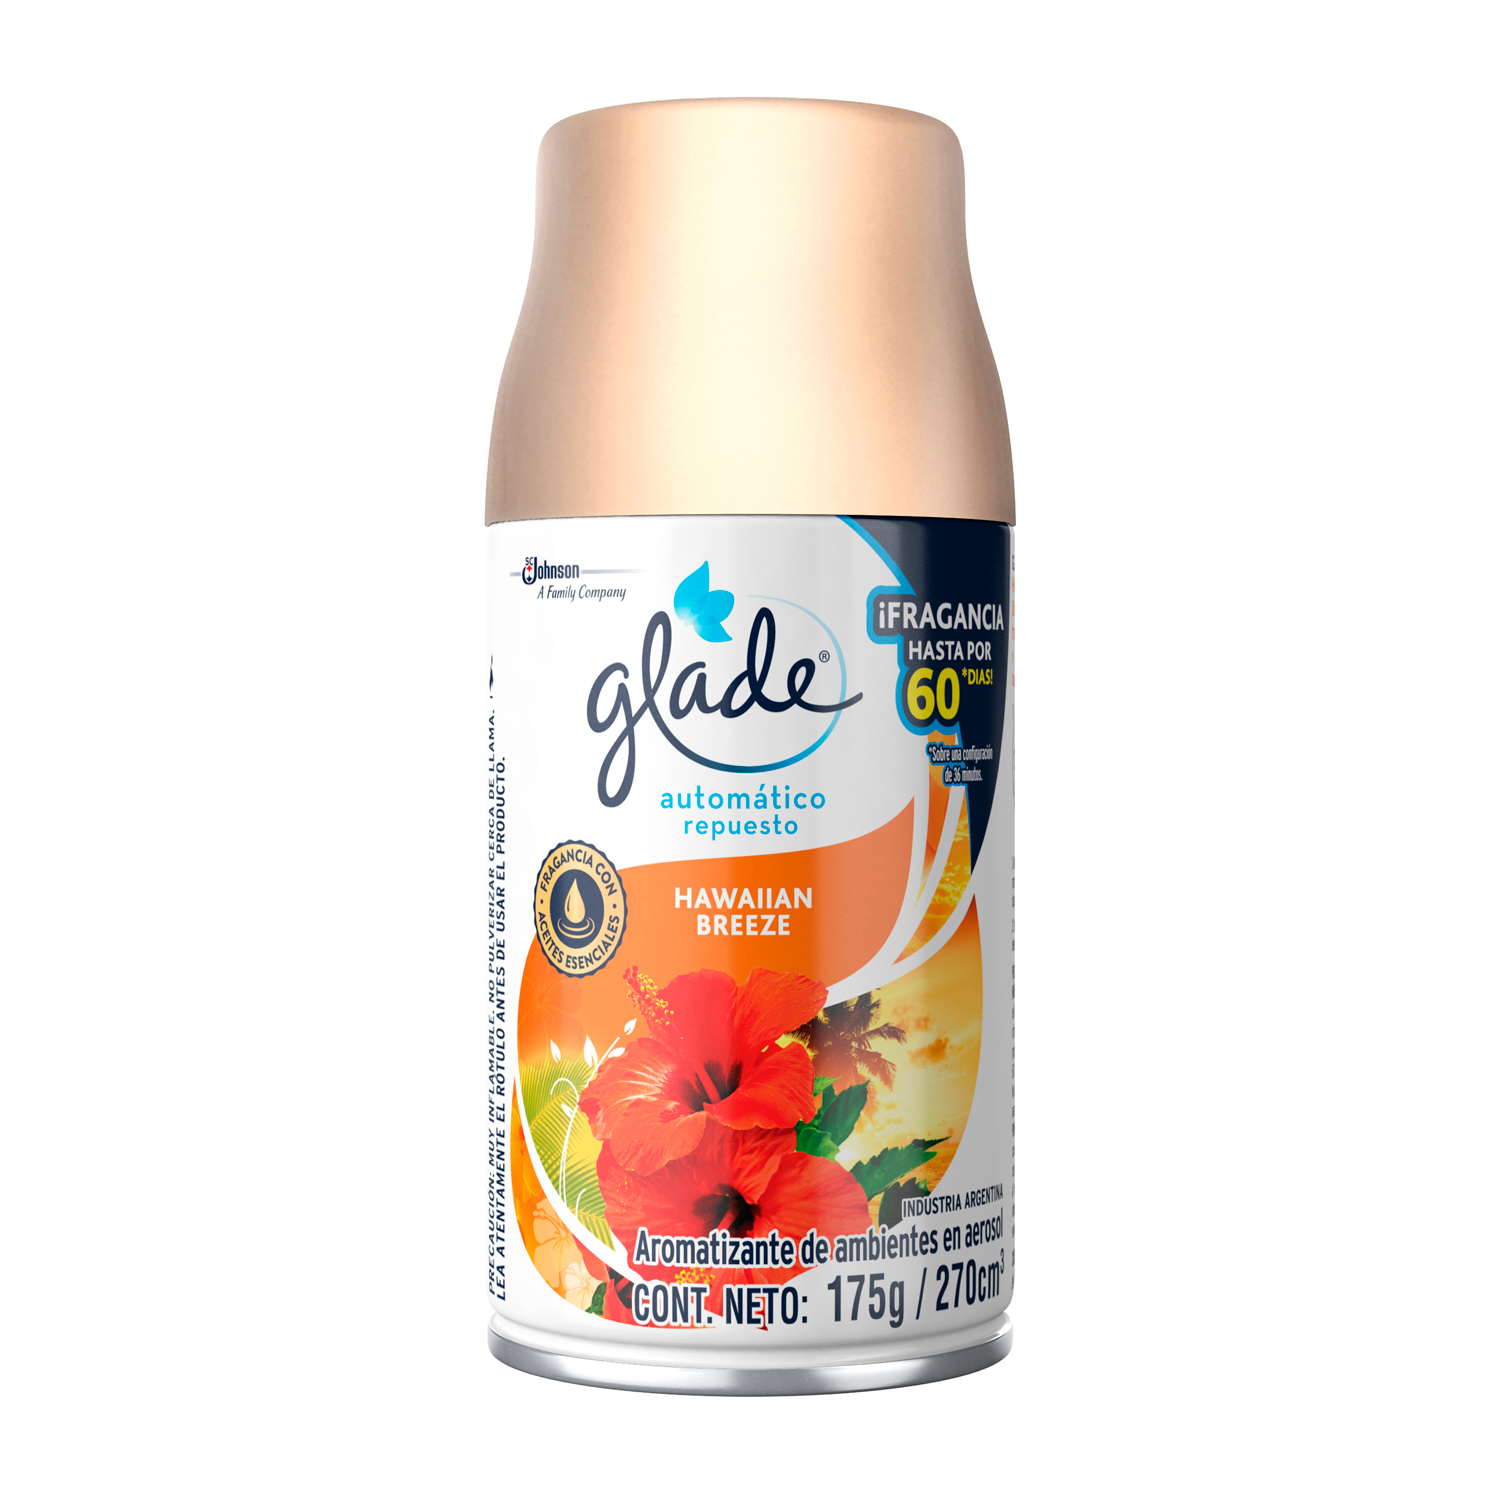 Glade® Automático Repuesto Hawaiian